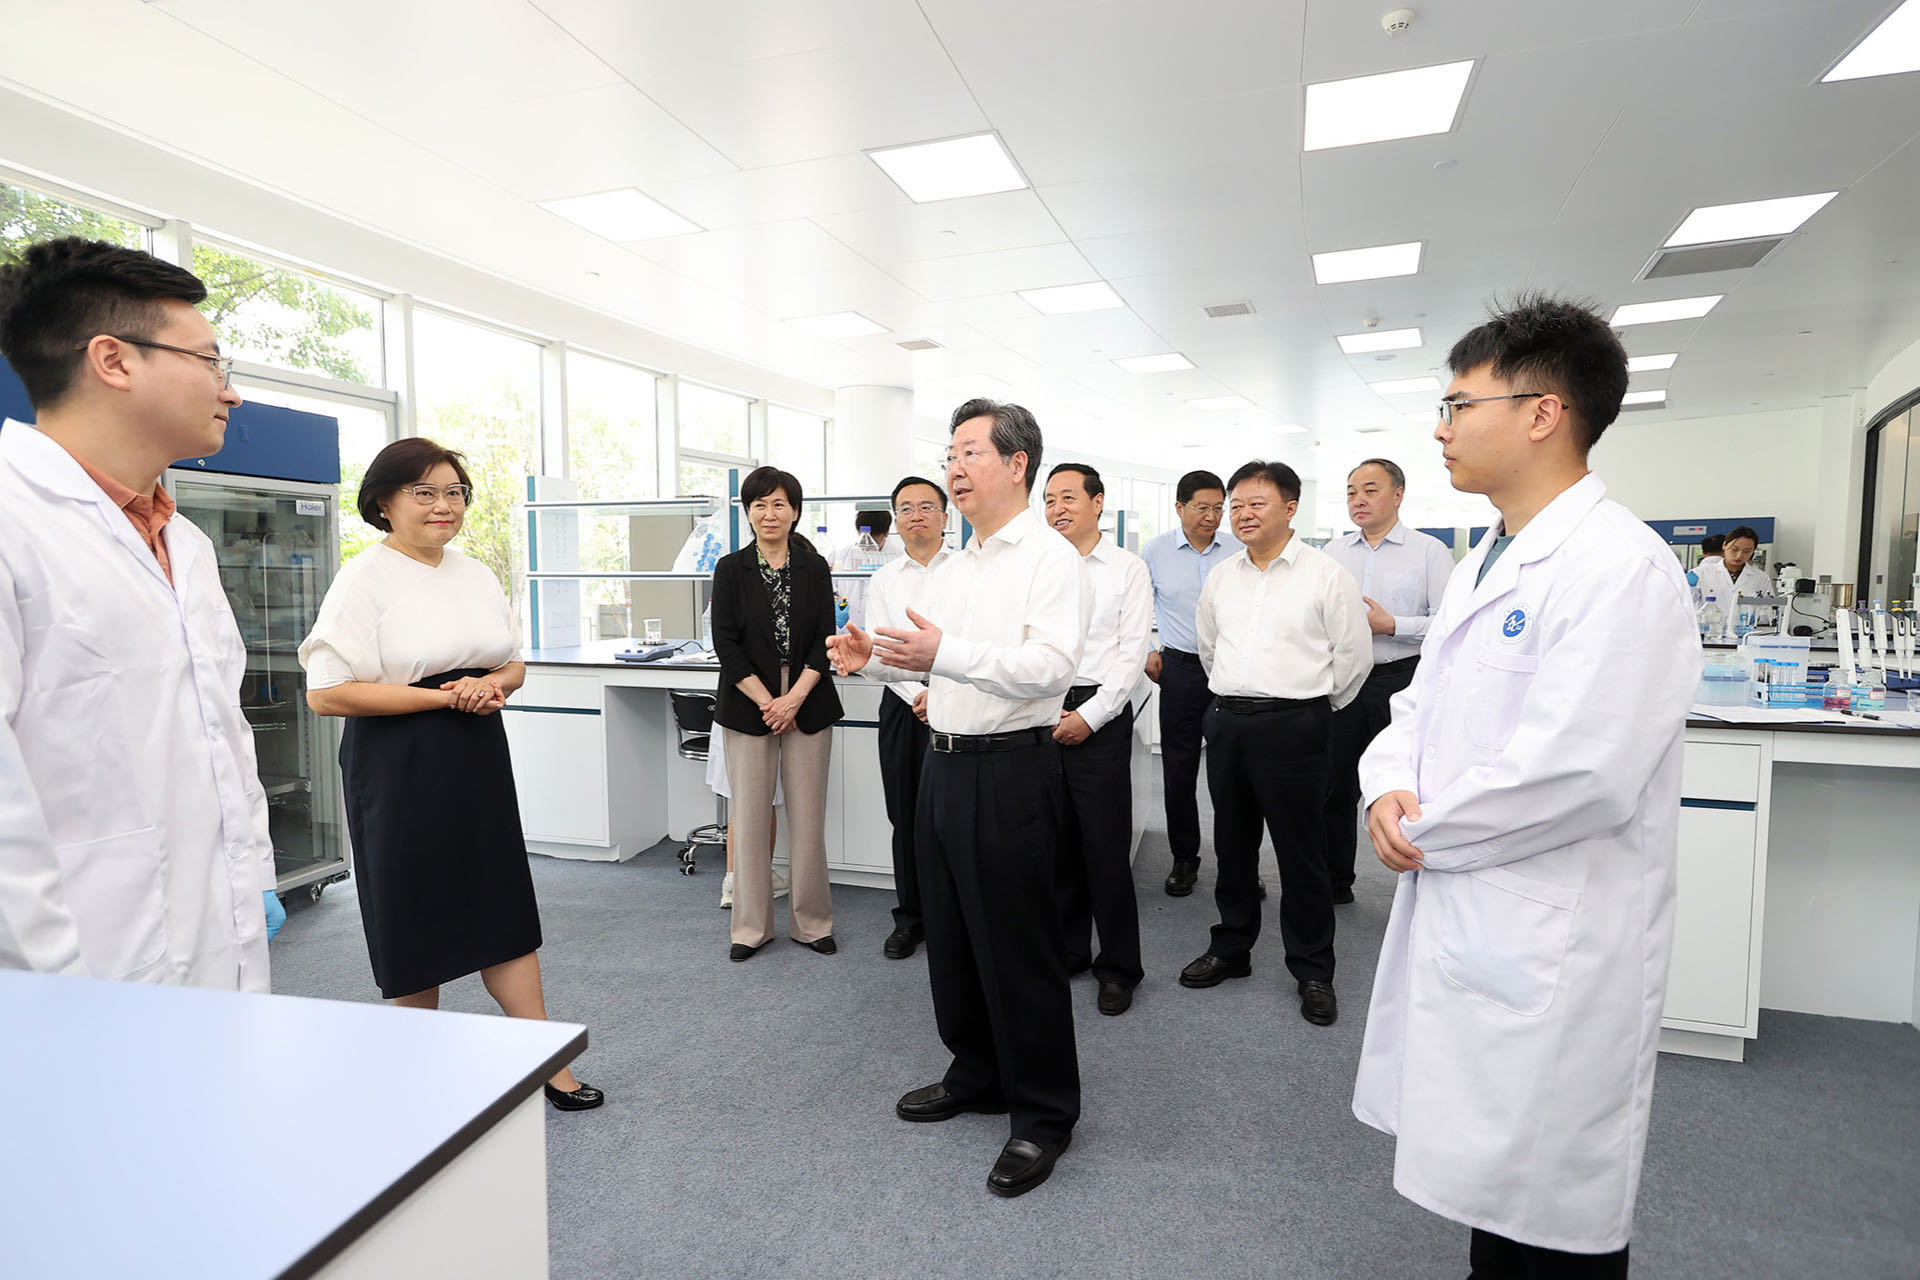 楼阳生出席郑州大学河南医学院新校区项目开工仪式